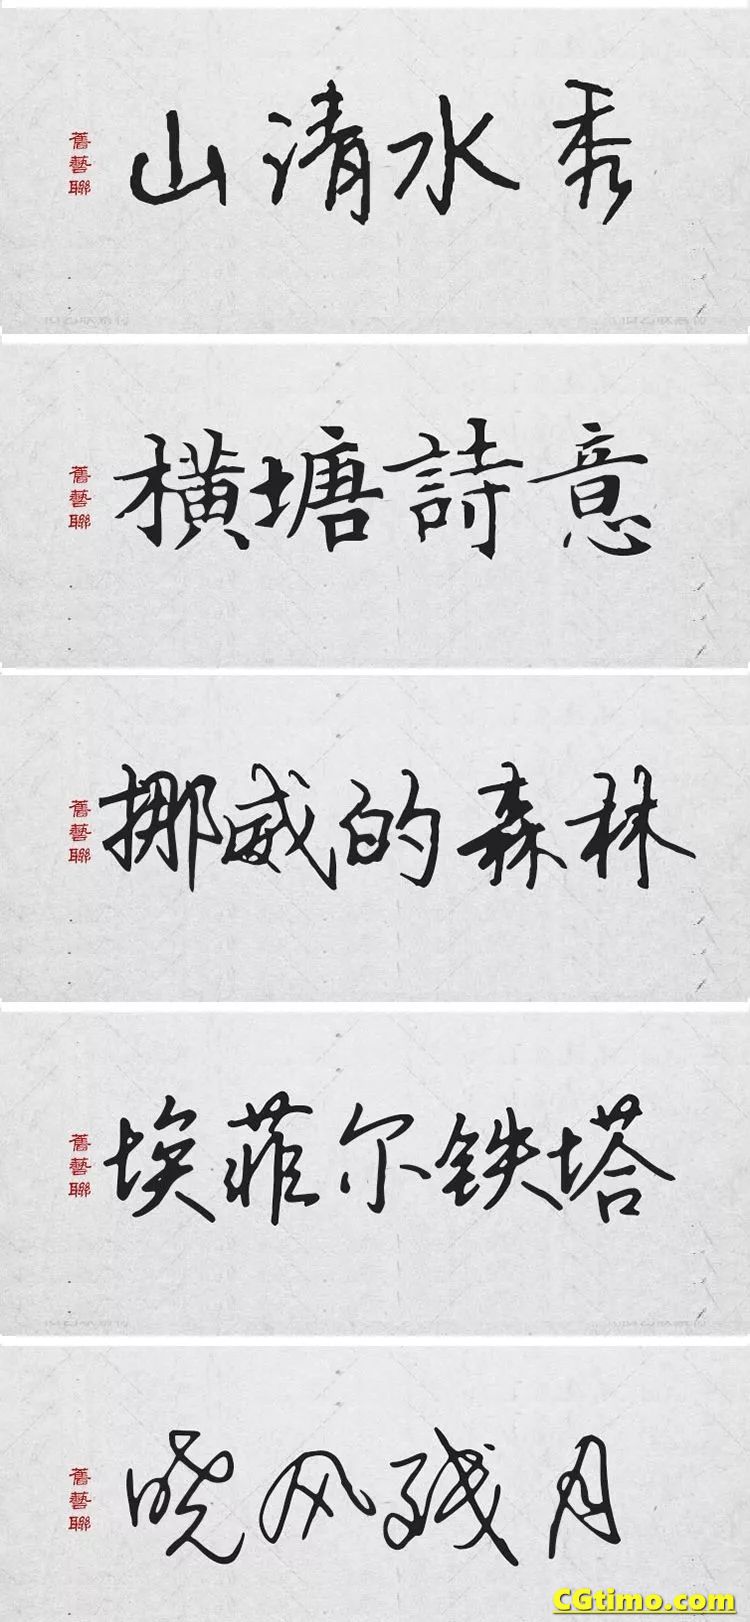 字体-300款中国风高端毛笔字体+笔触合集 字体下载 第20张